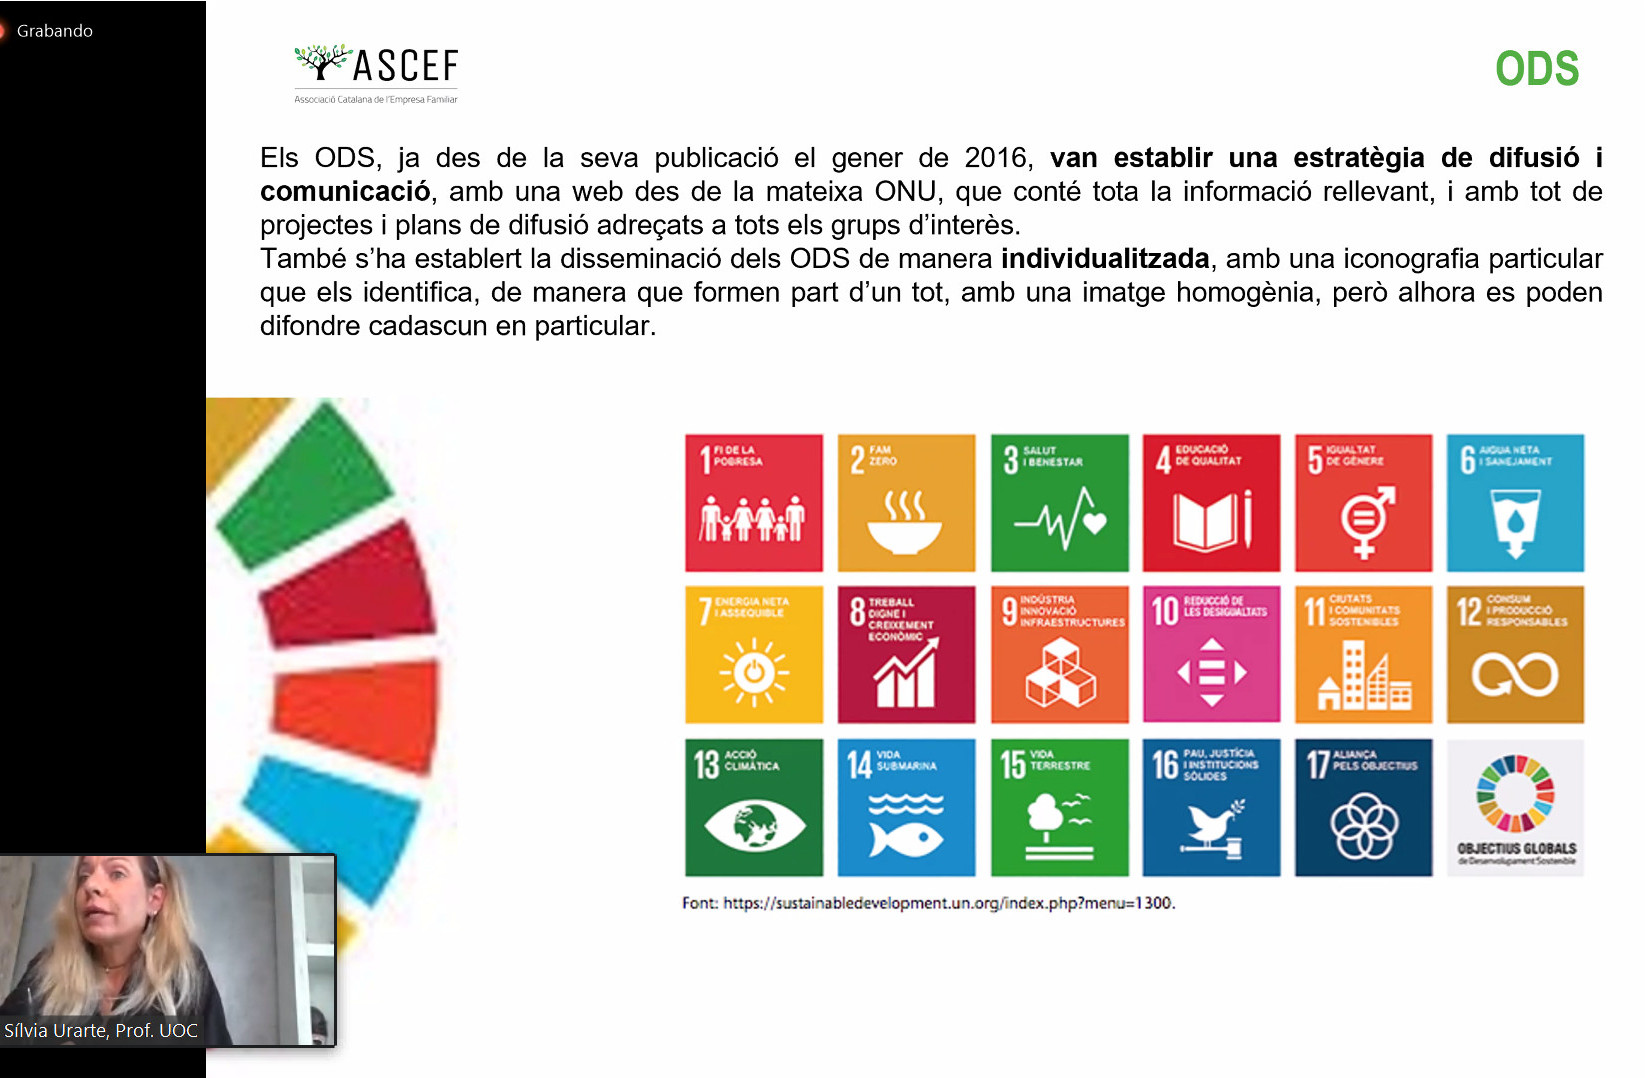 “Els ODS no és una qüestió de responsabilitat social, sinó una obligació per a la sostenibilitat”